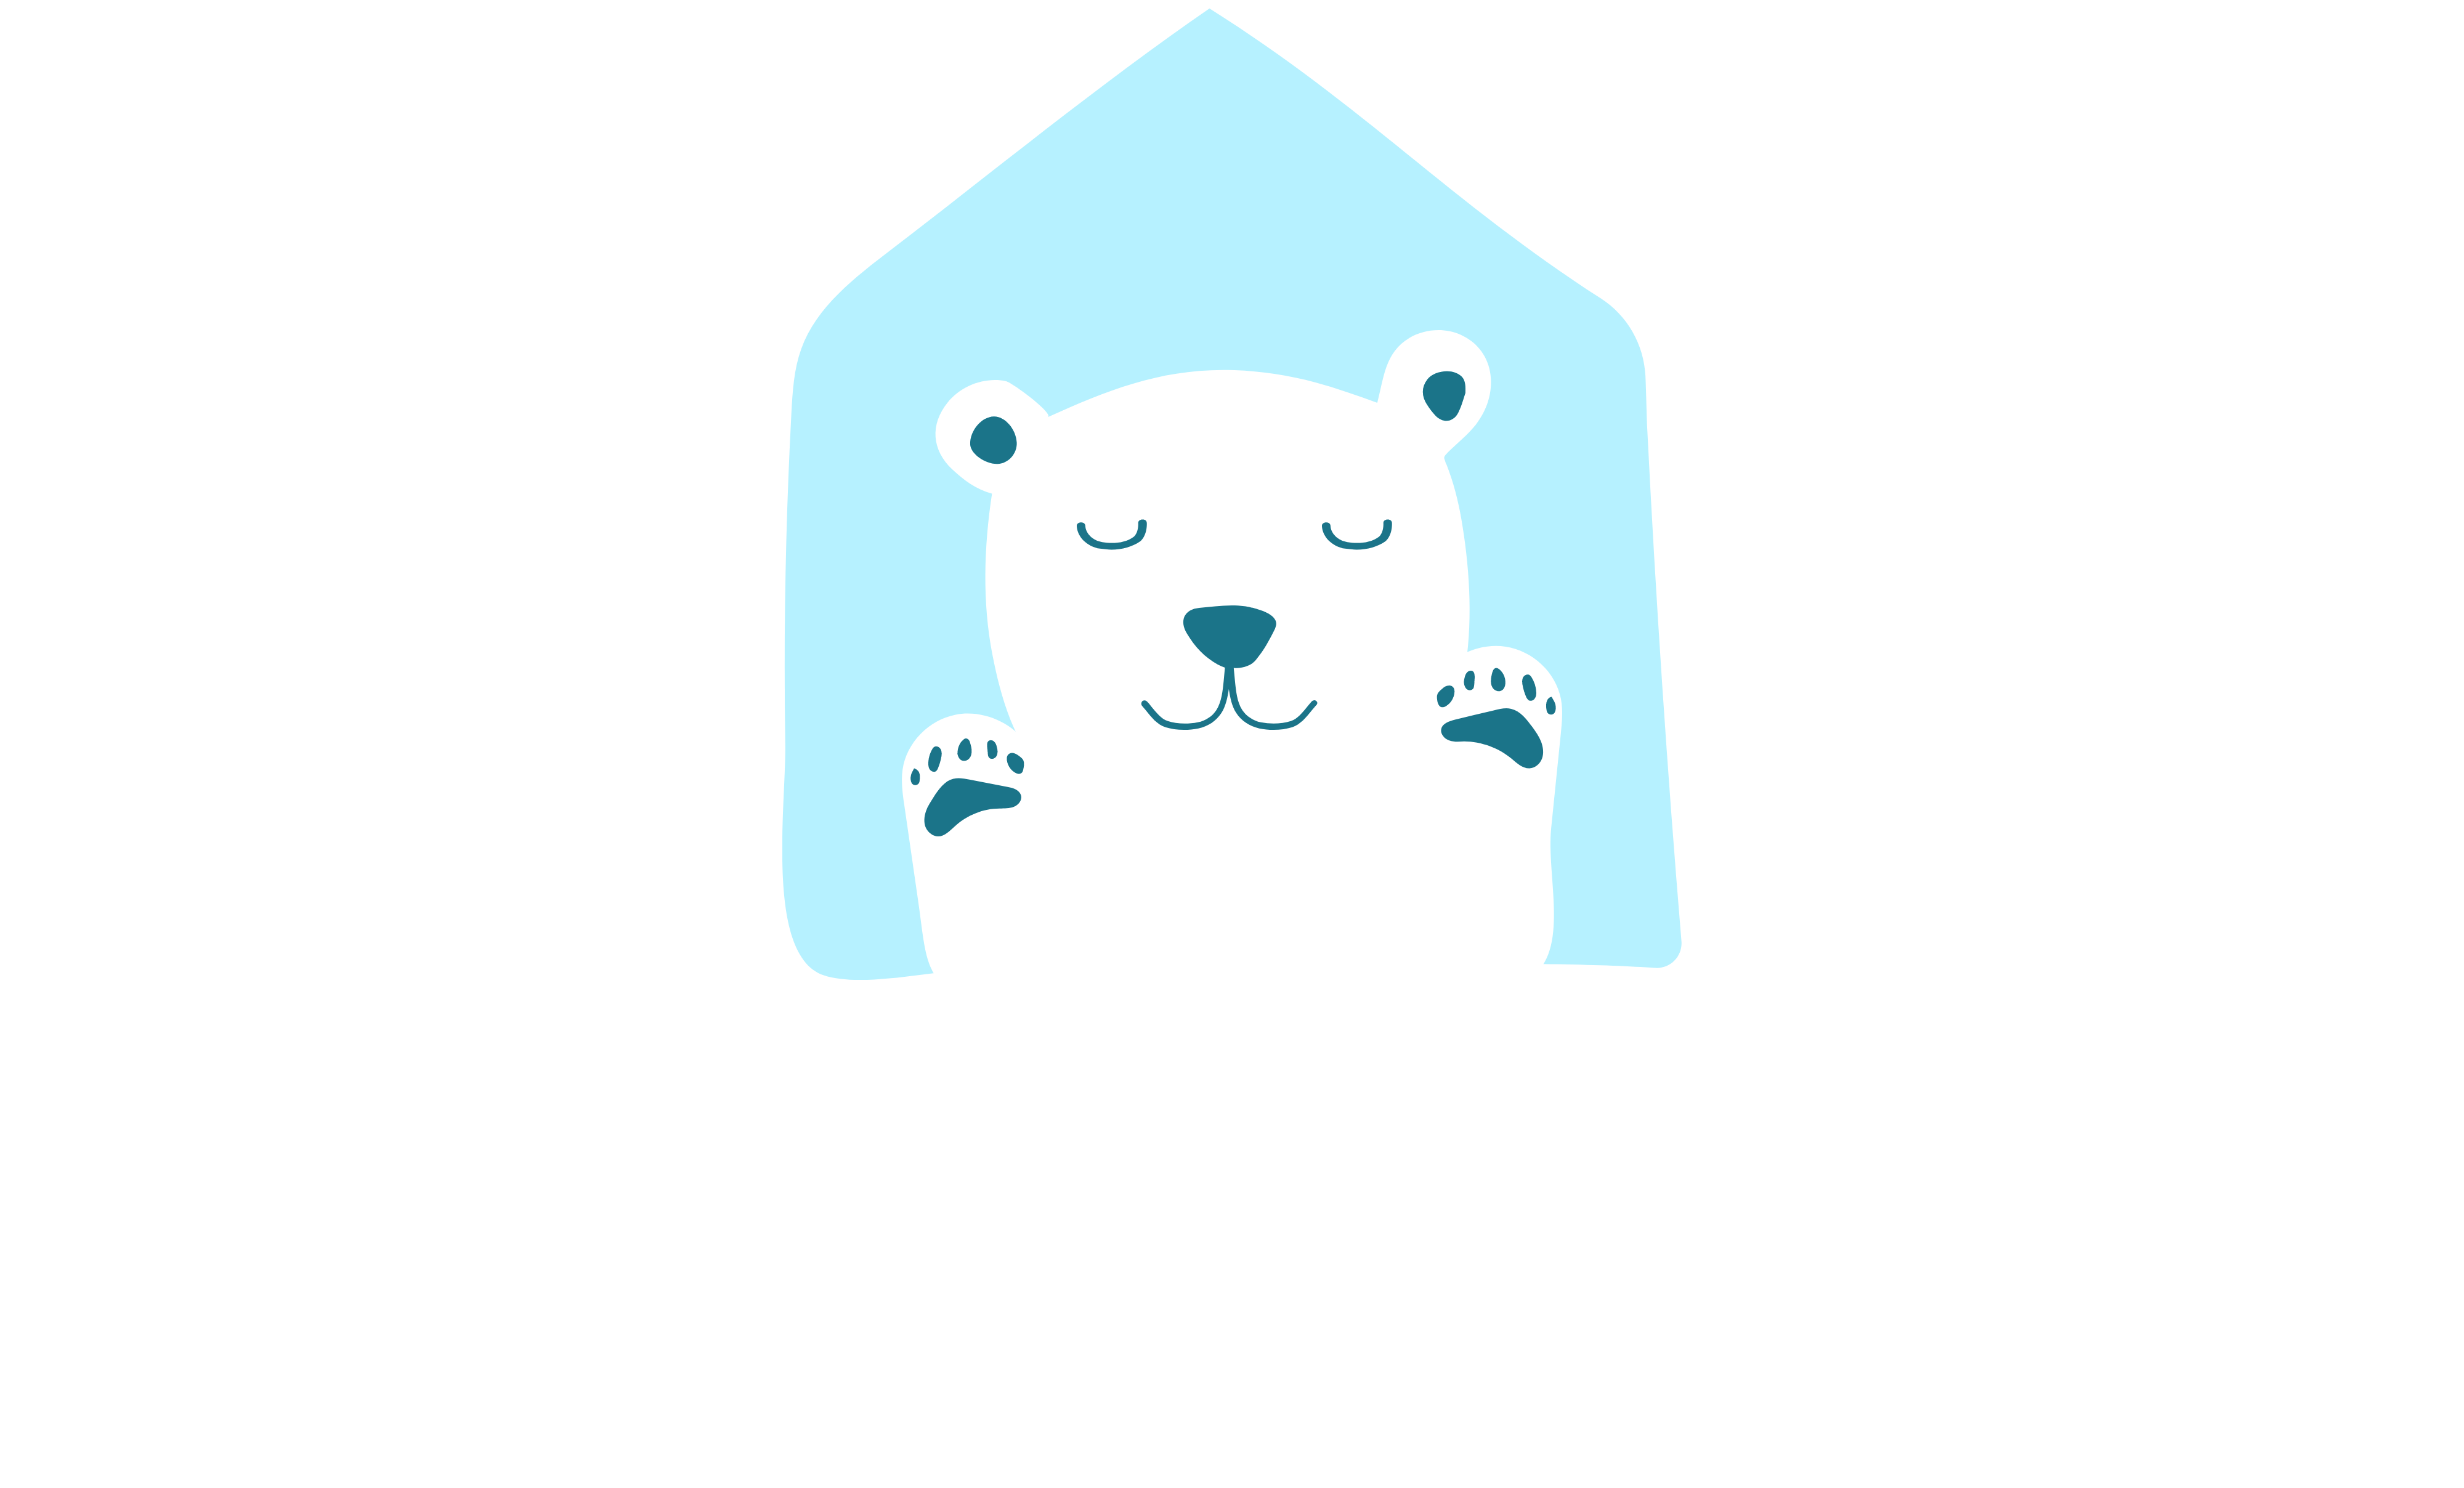 The CamBud Store